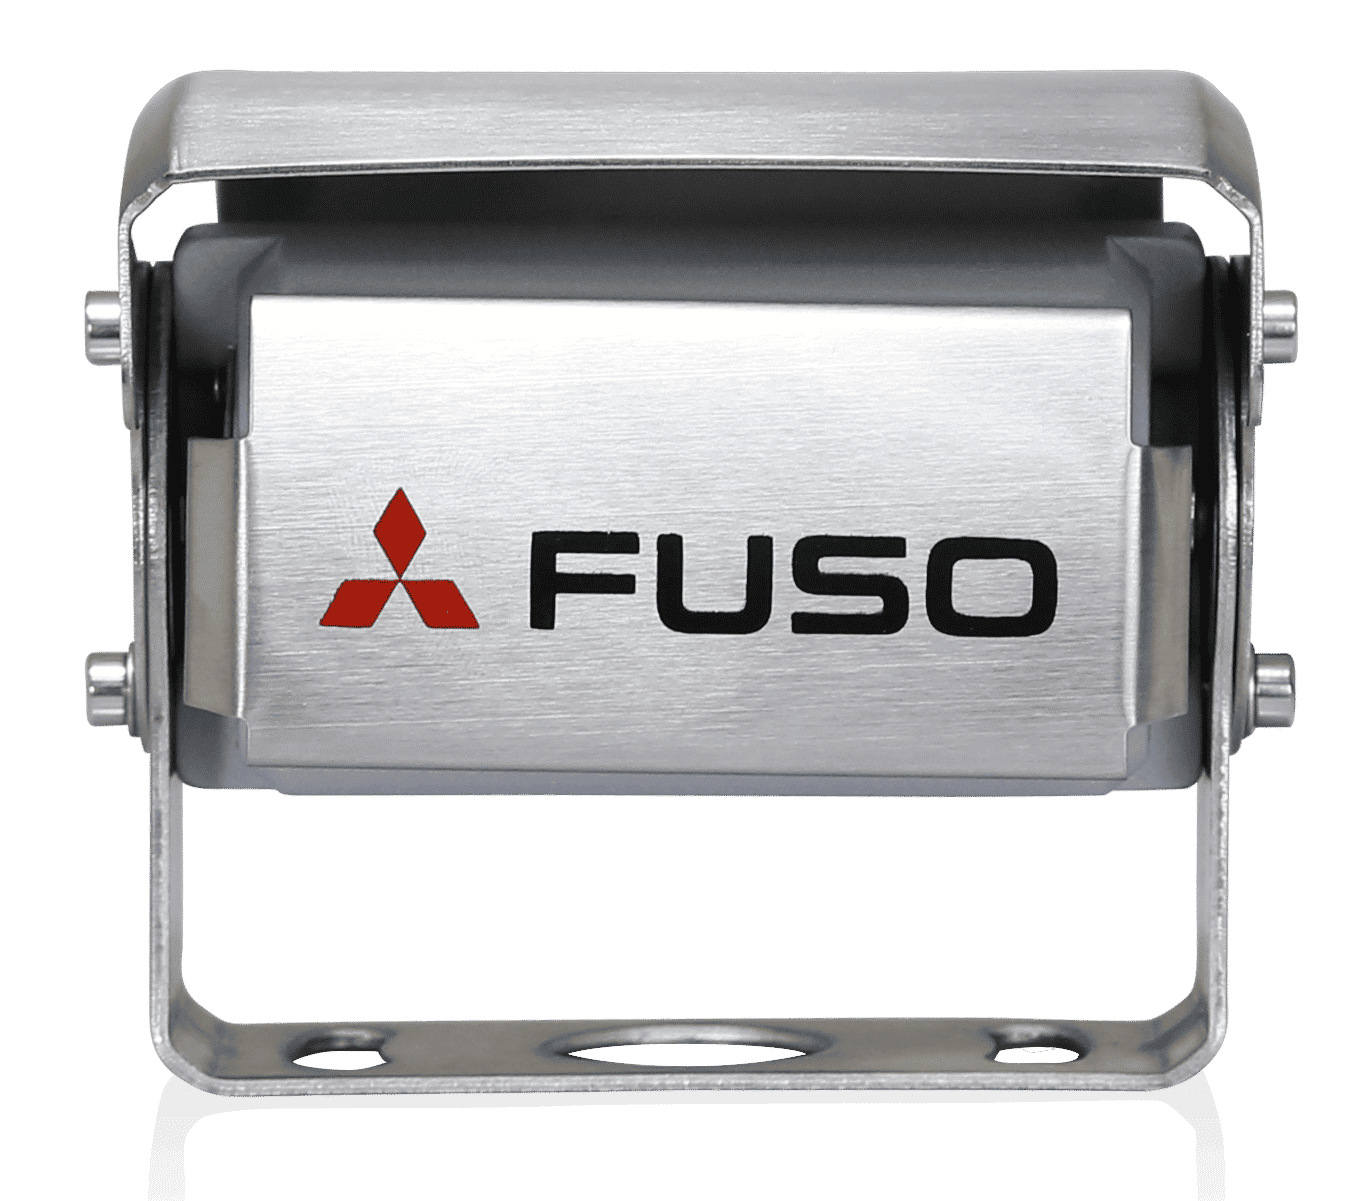 FUSO backkamera är en effektiv produkt som förenar fördelarna med bästa sikt och högsta säkerhet. Den har en integrerad mikrofon, som ger en bättre sikt över området bakom fordonet. Vid mörker ändras displayfärgen automatiskt för att möjliggöra optimal sikt för föraren. Systemet kan användas med 12 och 24 V och uppfyller FUSO:s mycket stränga provningskrav. Kameran är vattentät enligt IP69K. Displayen har en upplösning på 800x480x3 (RGB).